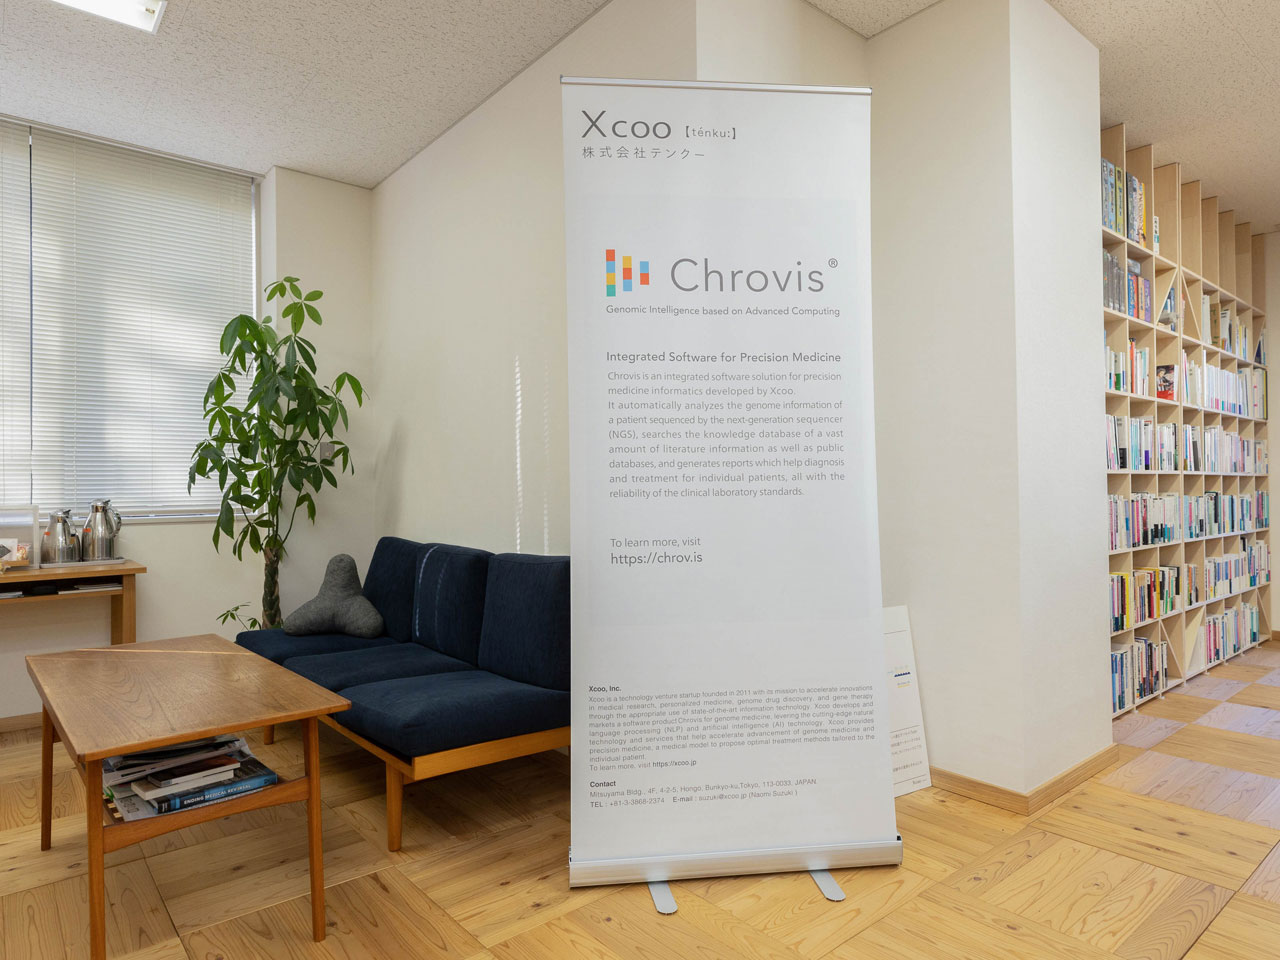 同社は、自然言語処理技術や人工知能技術を用いて、ゲノム医療向けトータルソリューションソフトウェア『Chrovis』（クロビス） の開発・販売を手掛ける。